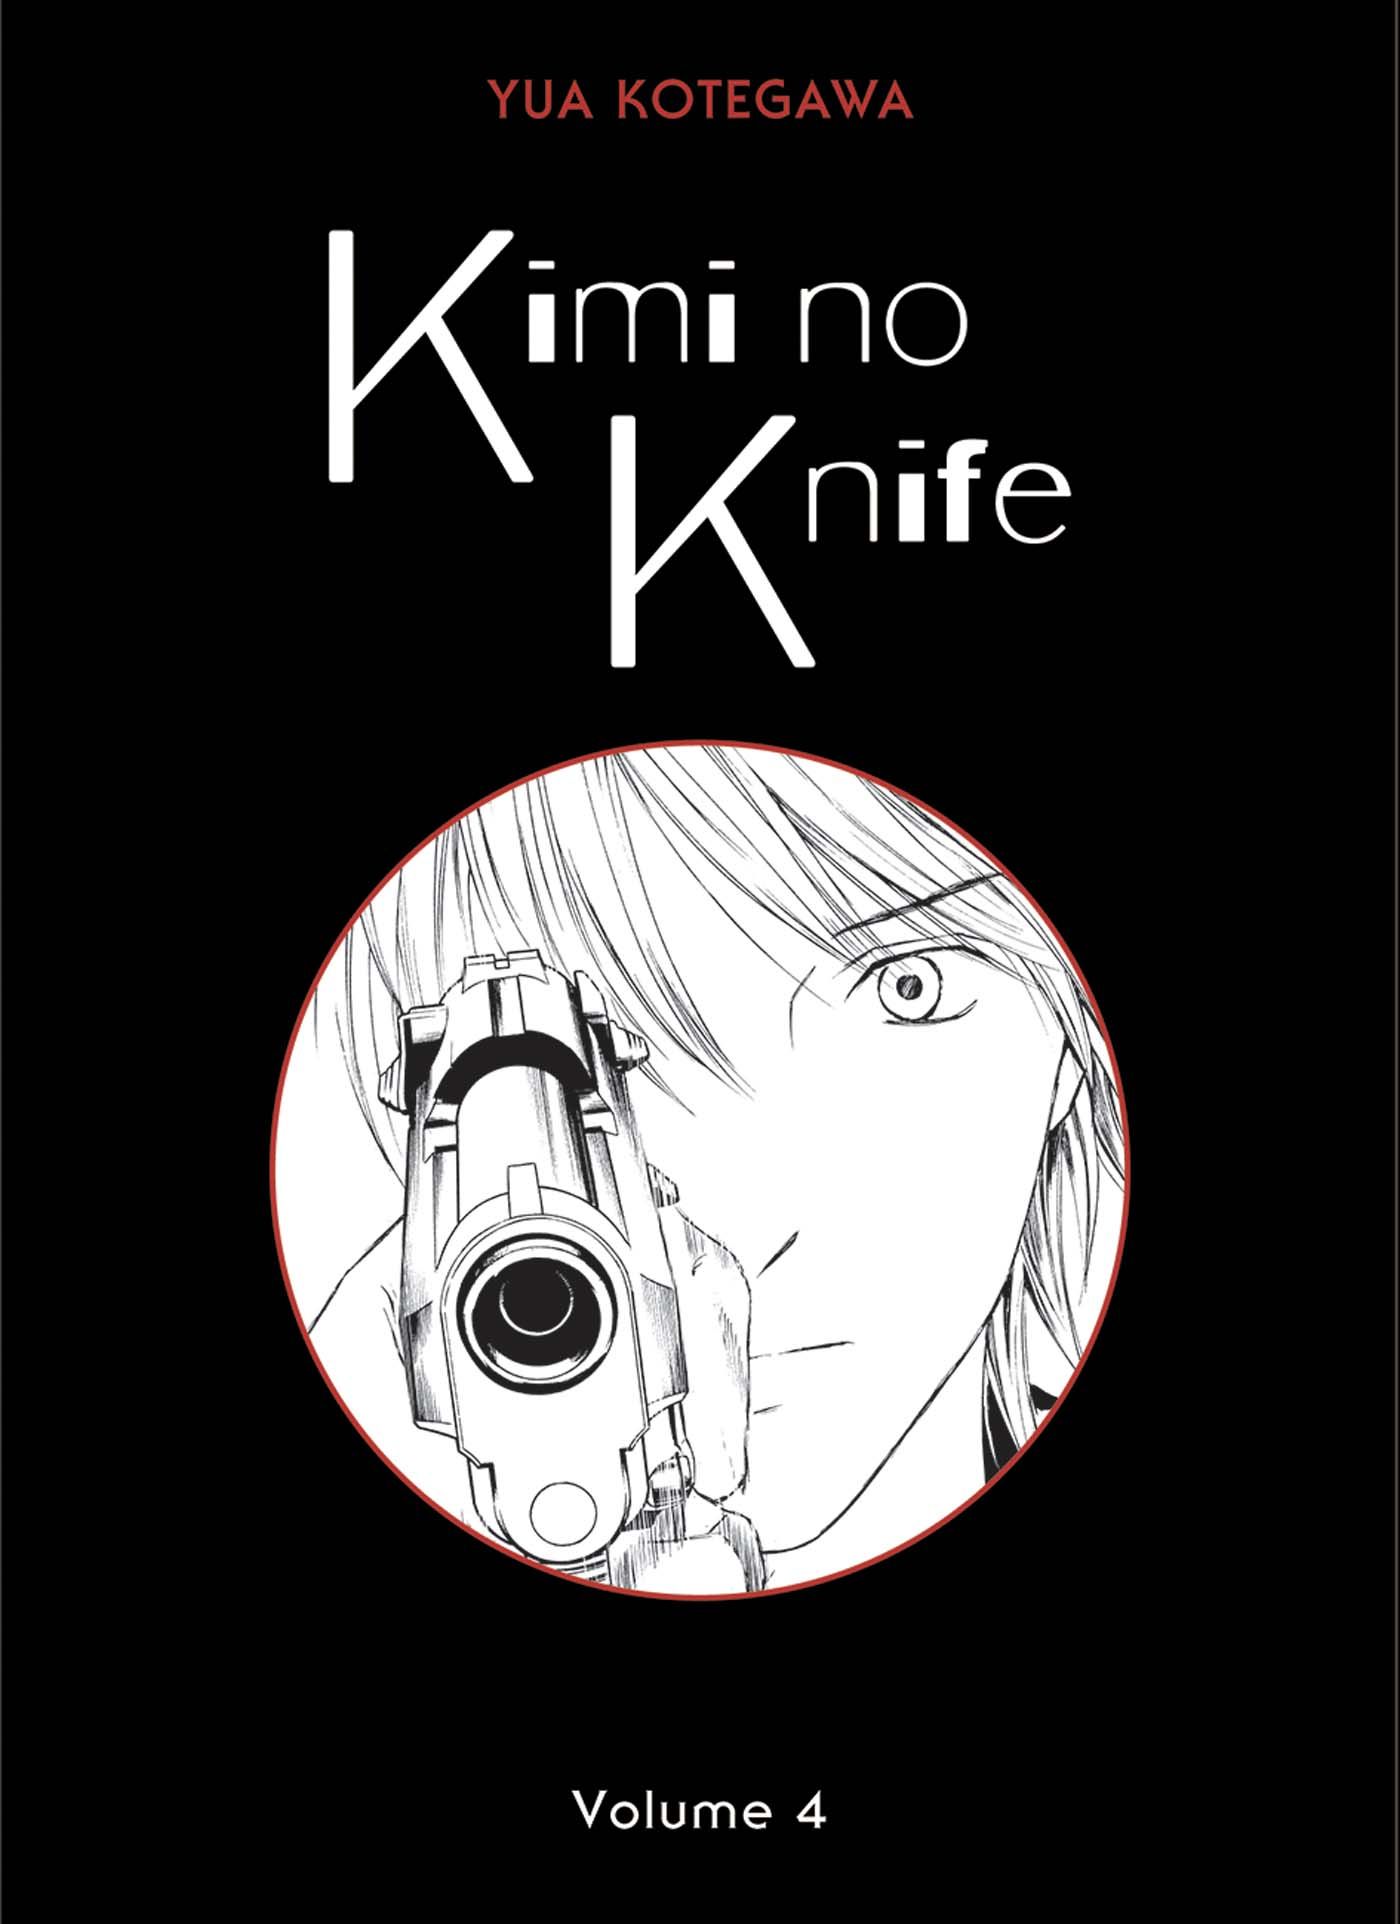 Kimi no Knife Vol.4